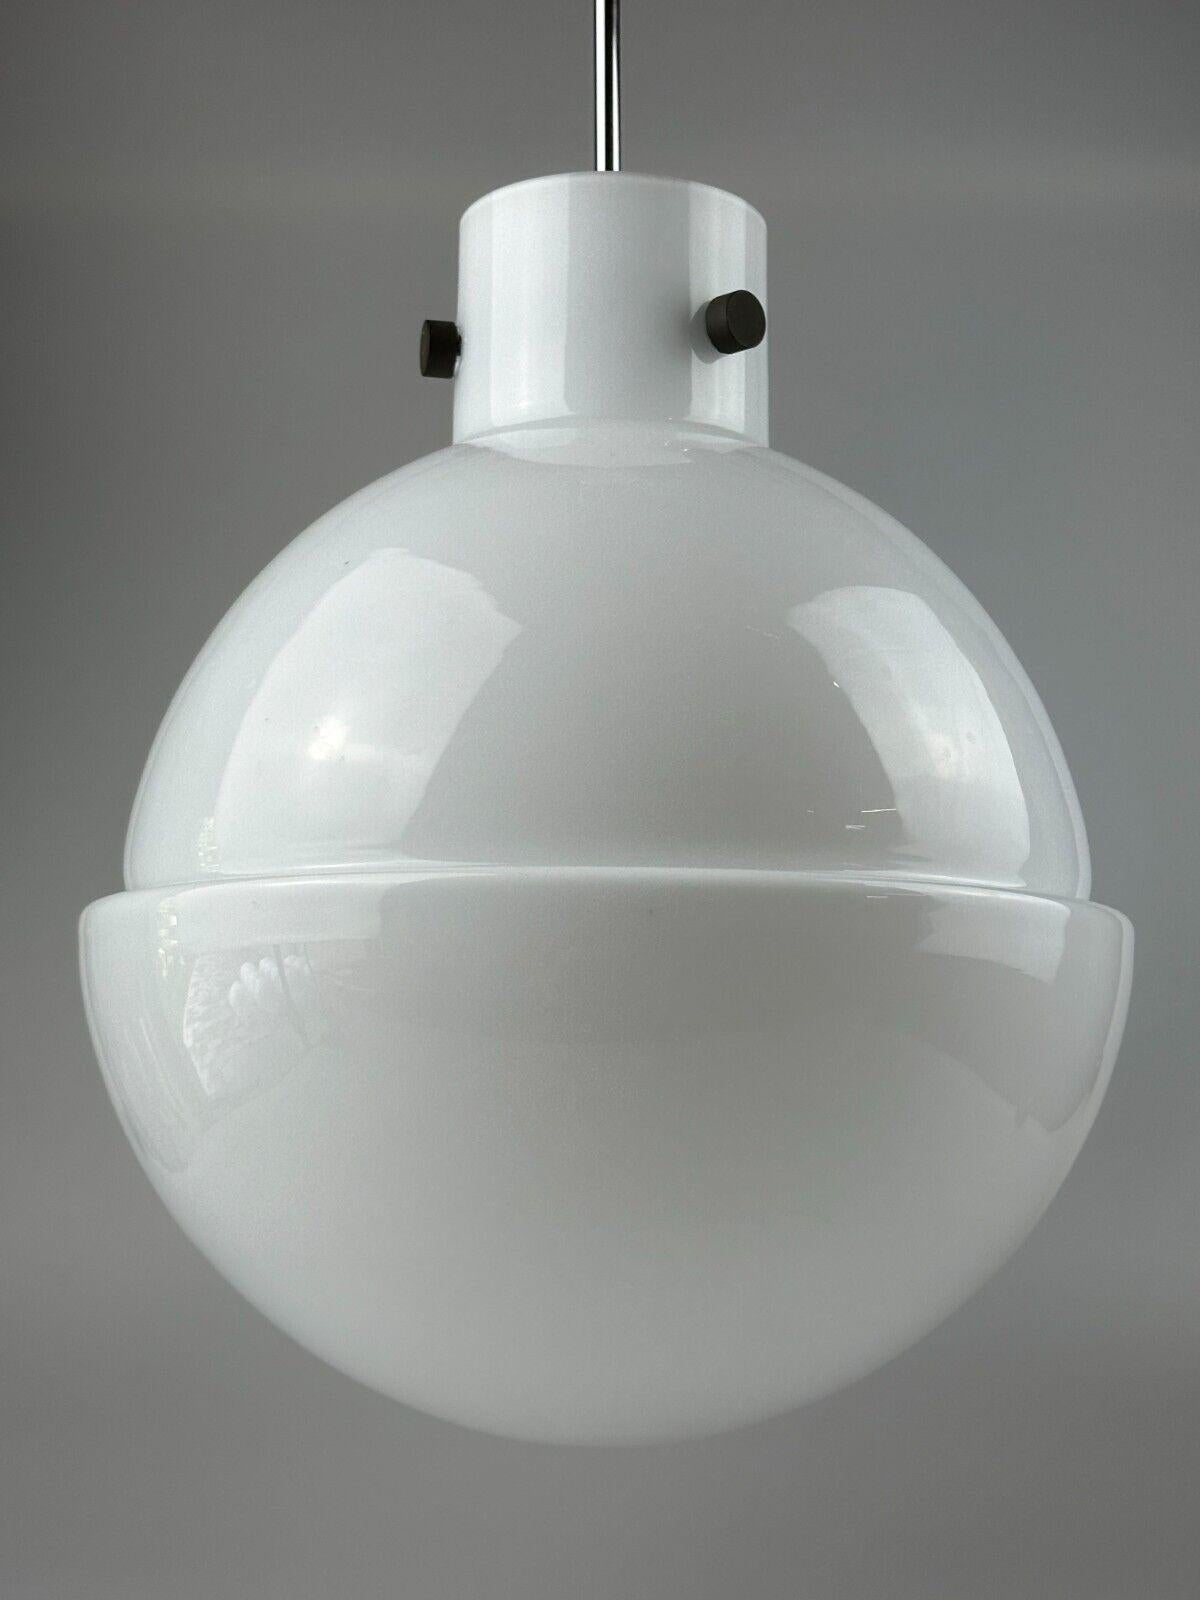 XL 60s 70s ceiling lamp ball lamp Glashütte Limburg Germany glass design For Sale 1